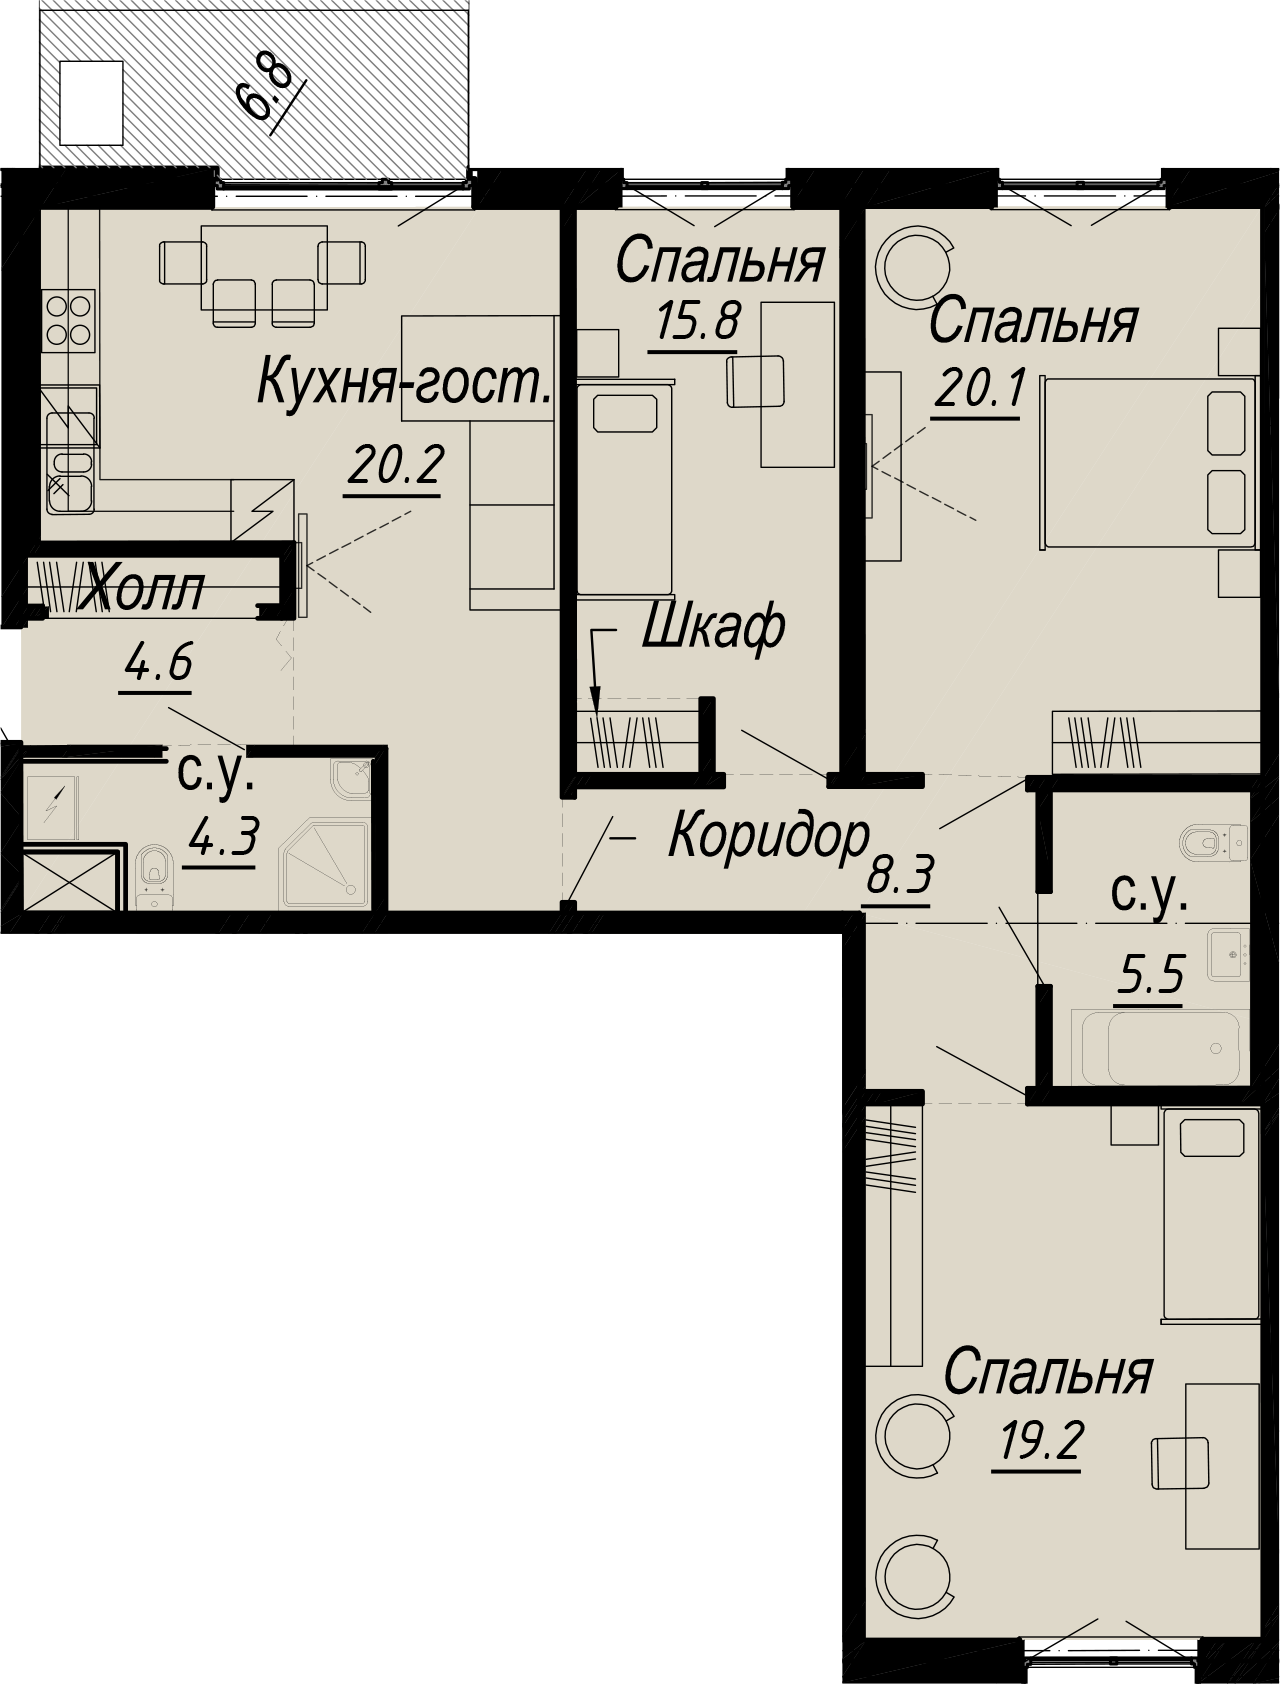 3-комнатная квартира  №4-6 в Meltzer Hall: 104.47 м², этаж 6 - купить в Санкт-Петербурге